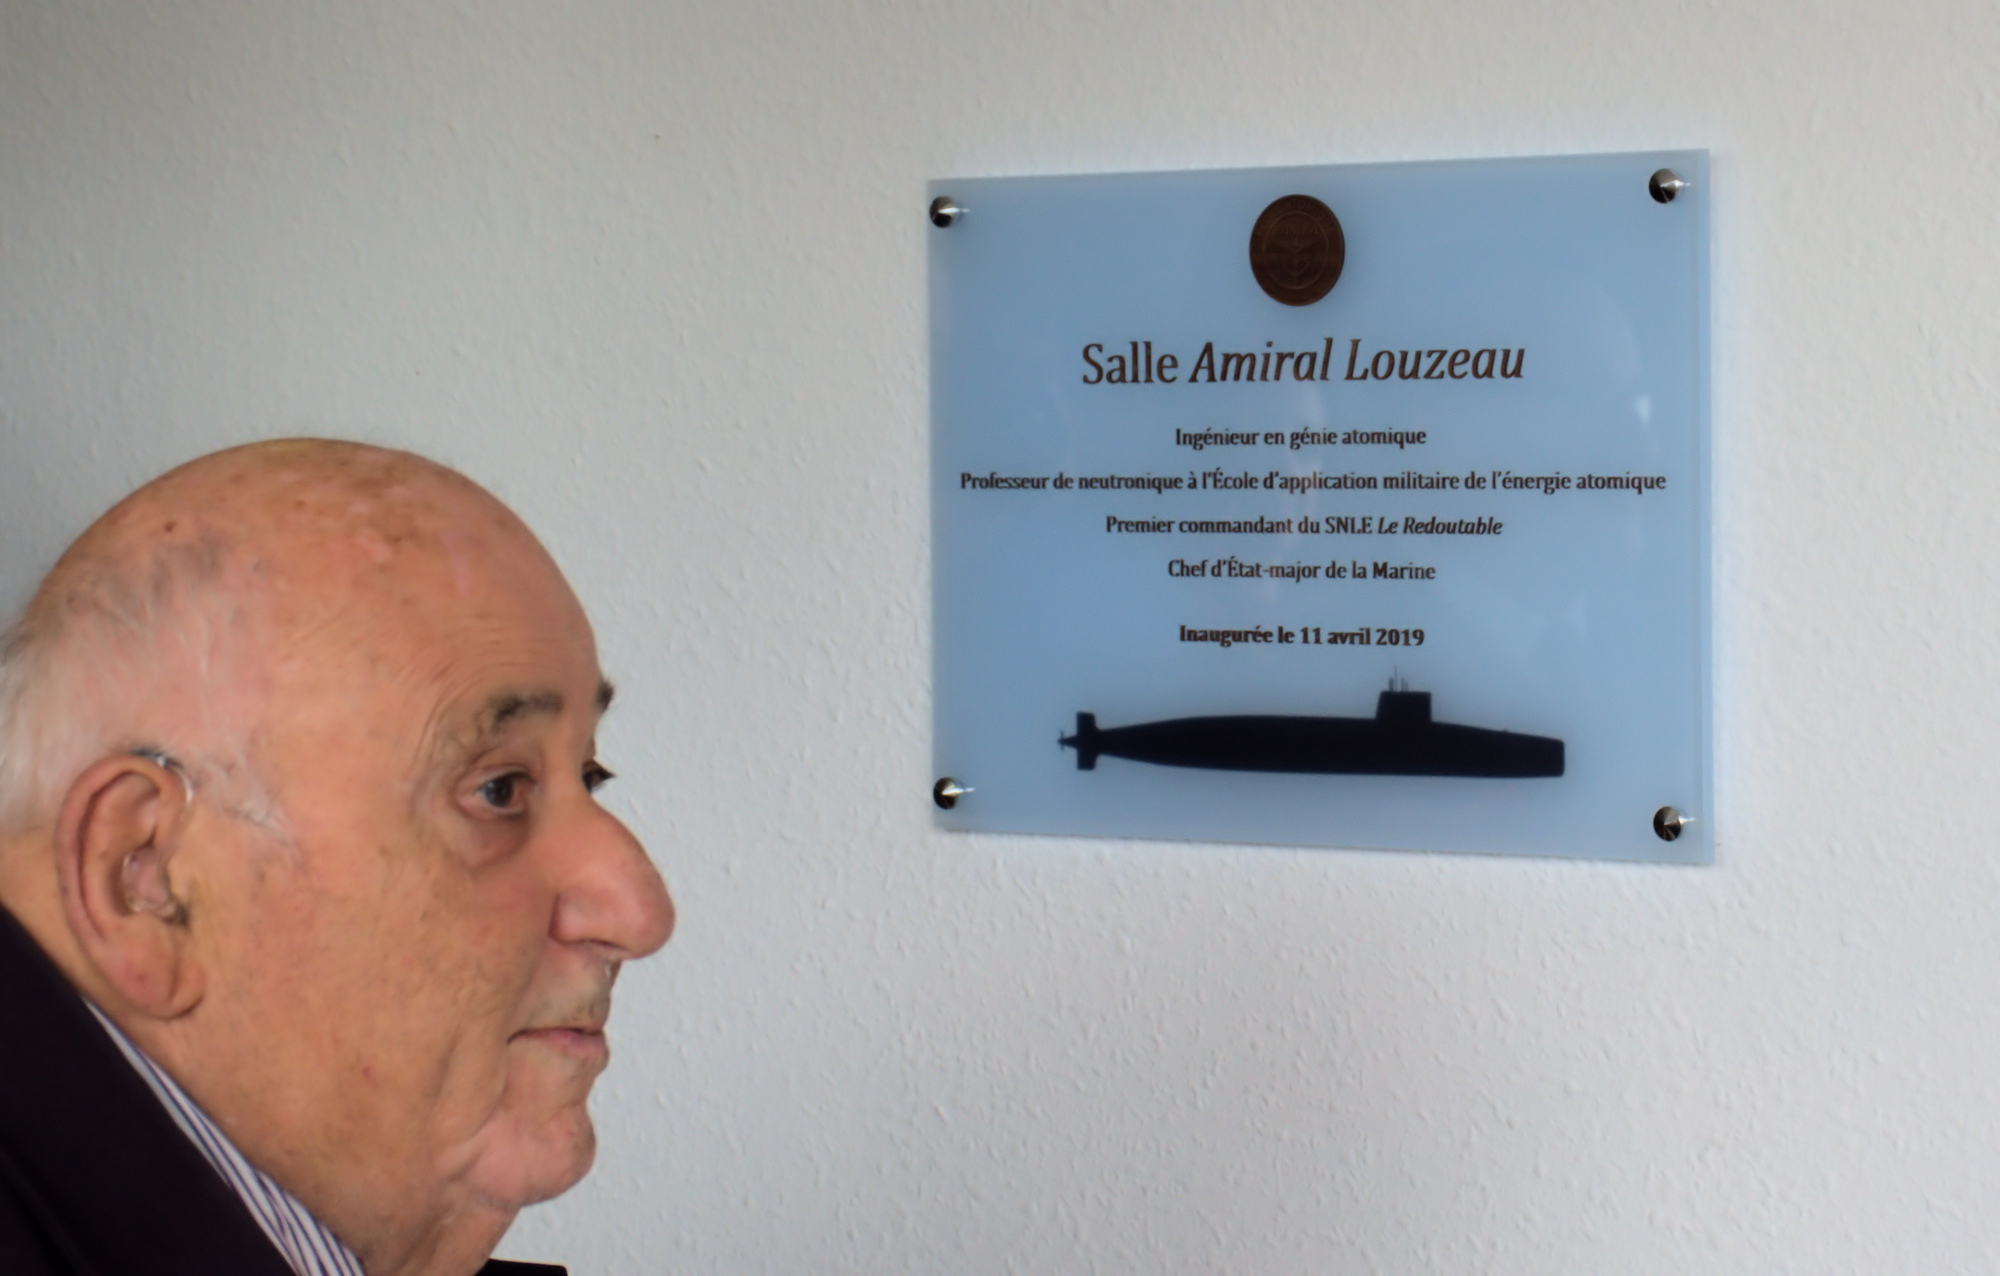 L'amiral Louzeau, 1er commandant du SNLE Le Redoutable, inaugure une salle à son nom à l’EAMEA